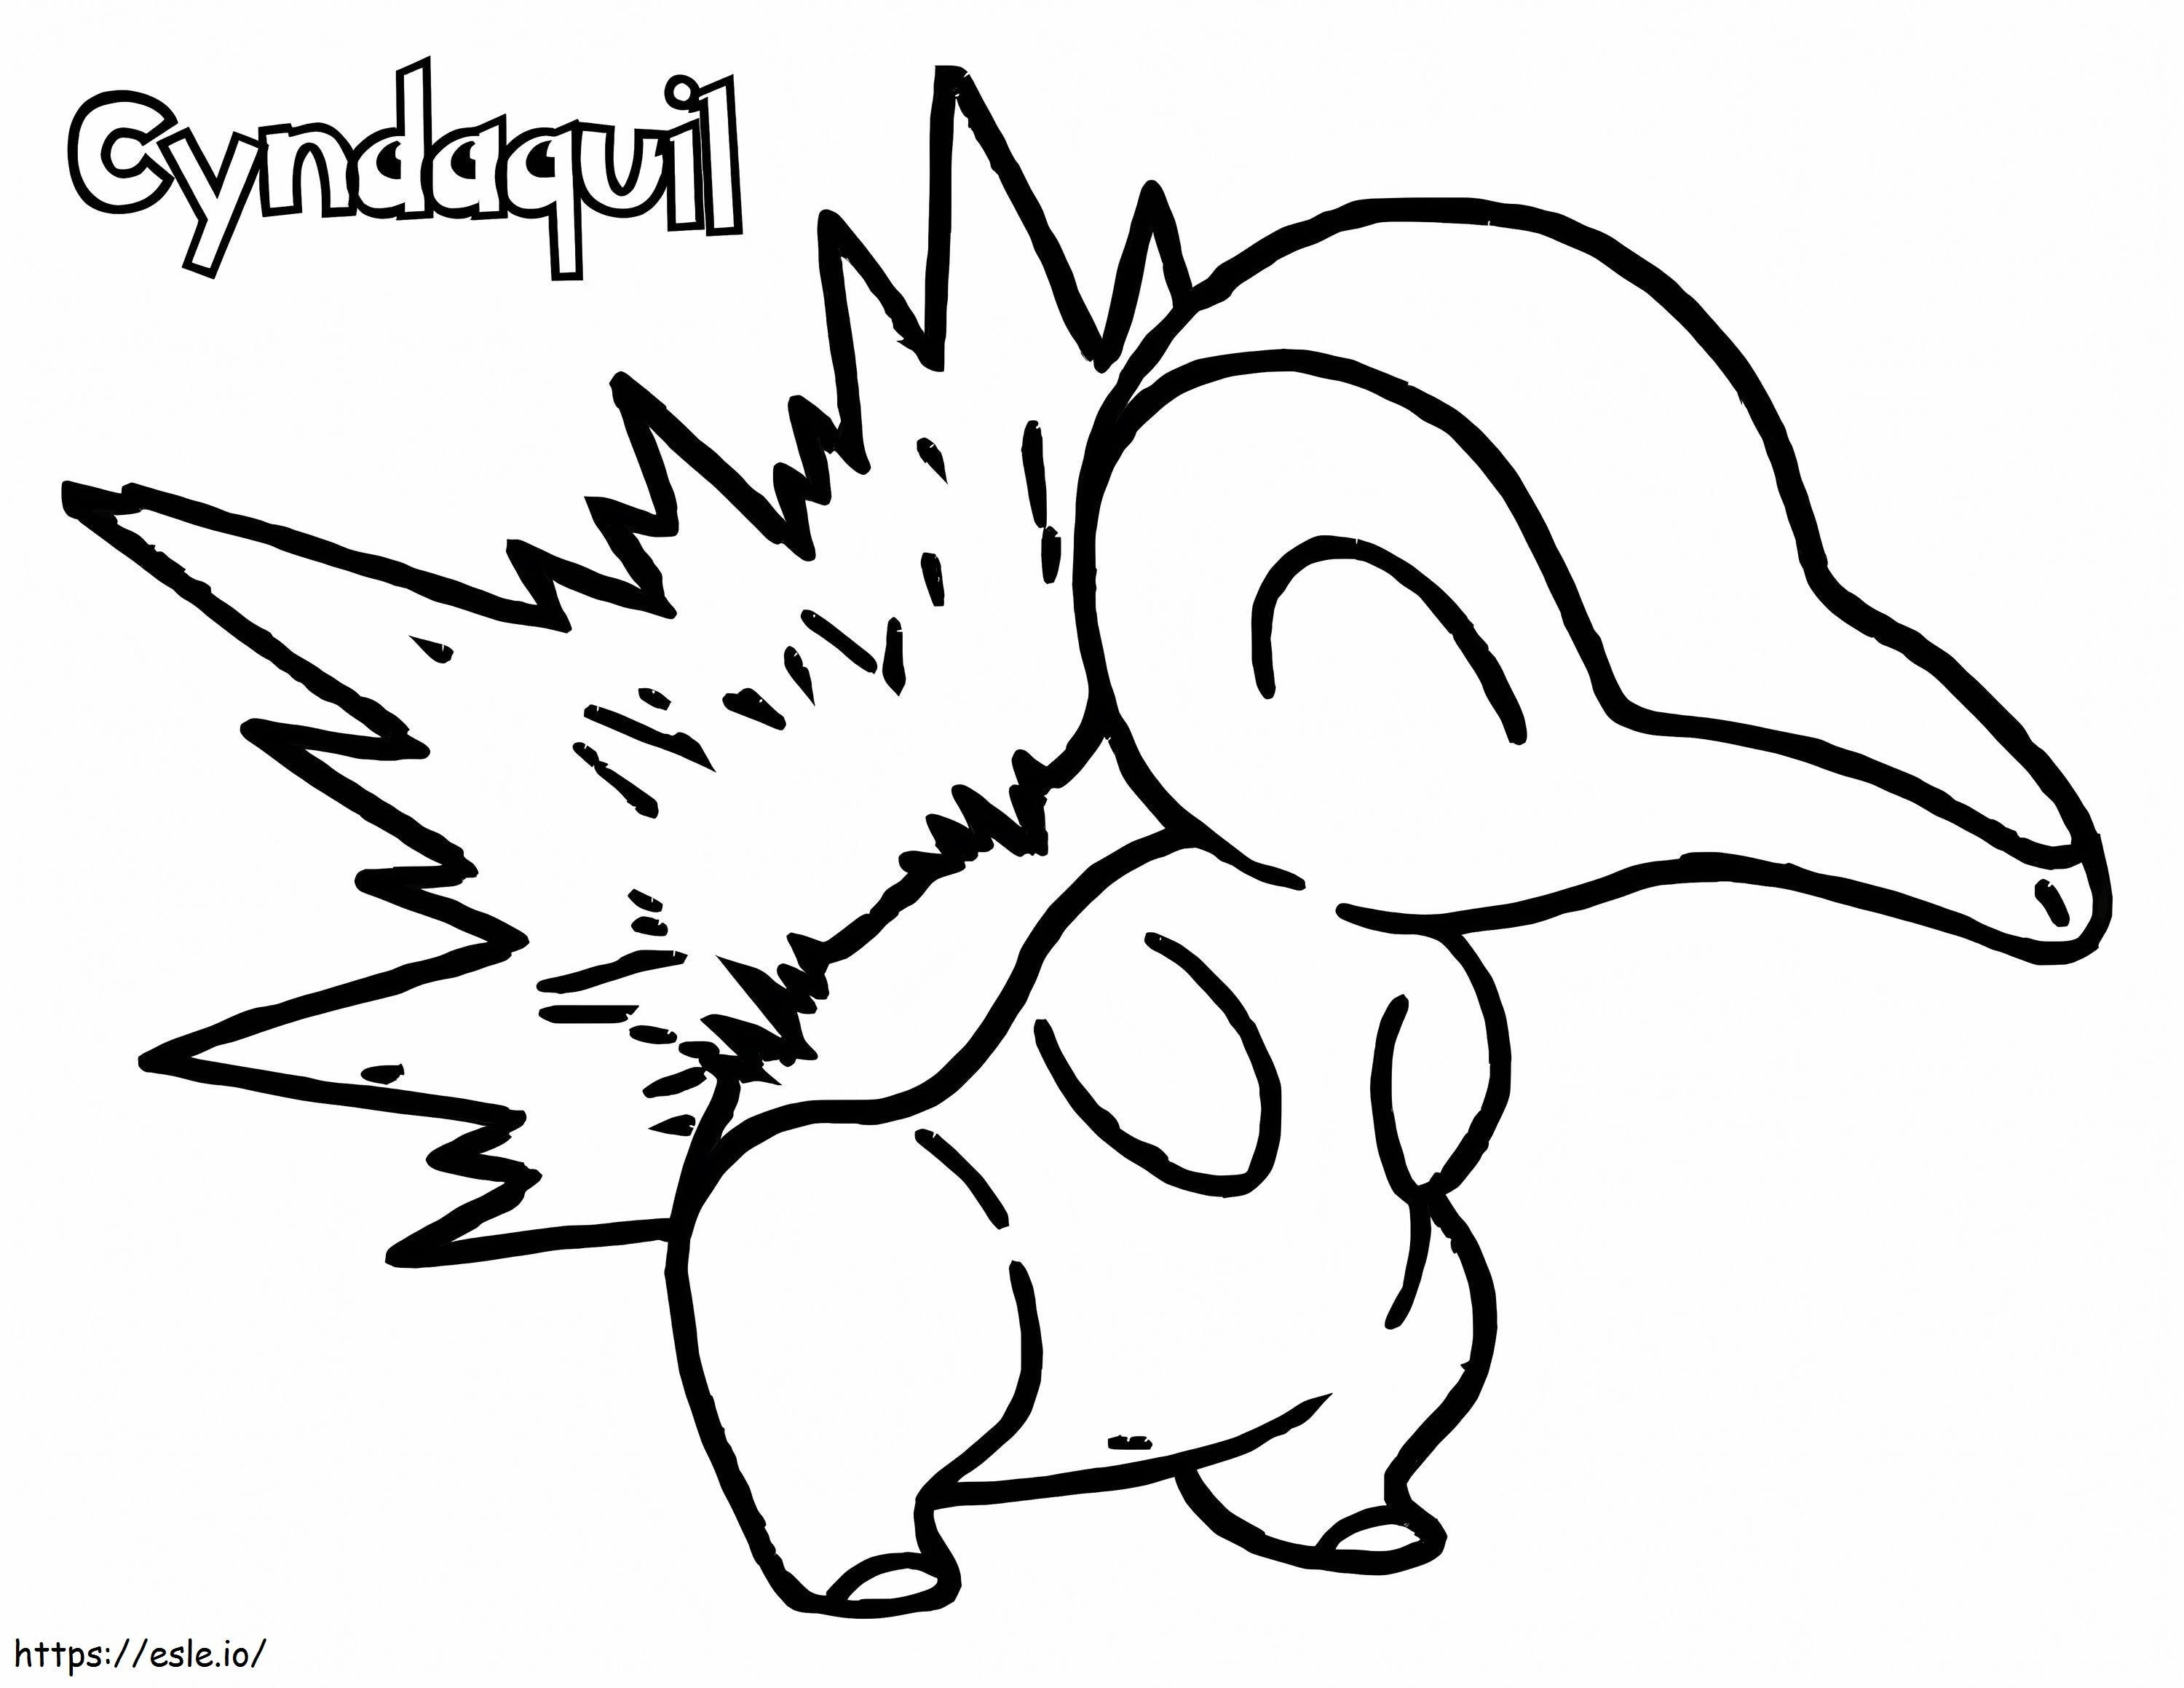 Cyndaquil Um Pokémon para colorir